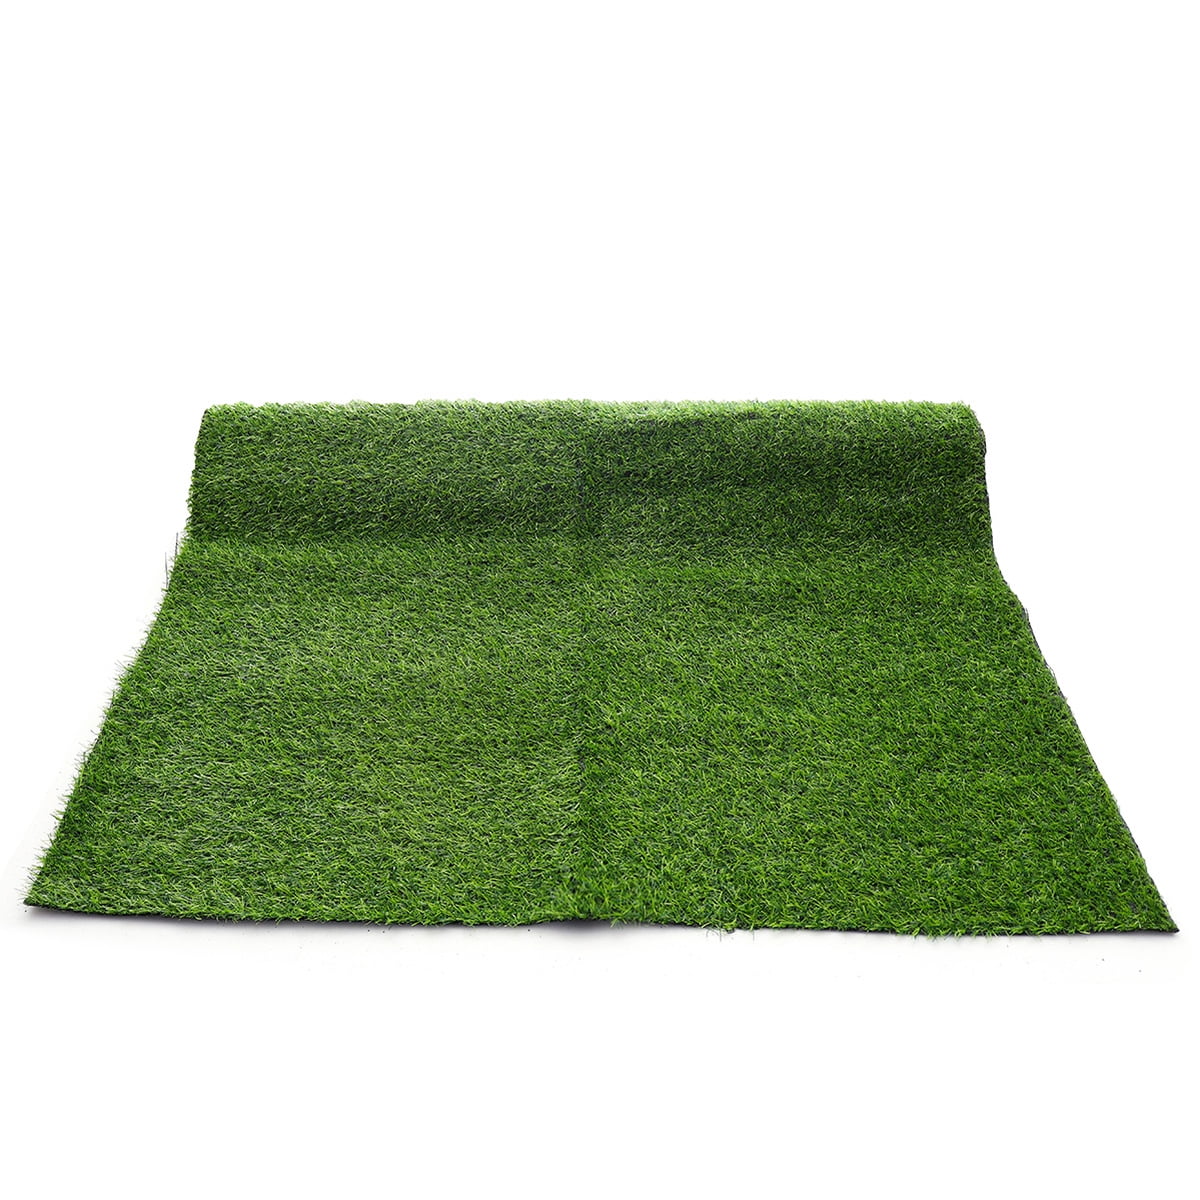 Astro Turf Floor Door Mat Grass Look Polyethylene Rugs Outdoor Green 40 x 70cm 